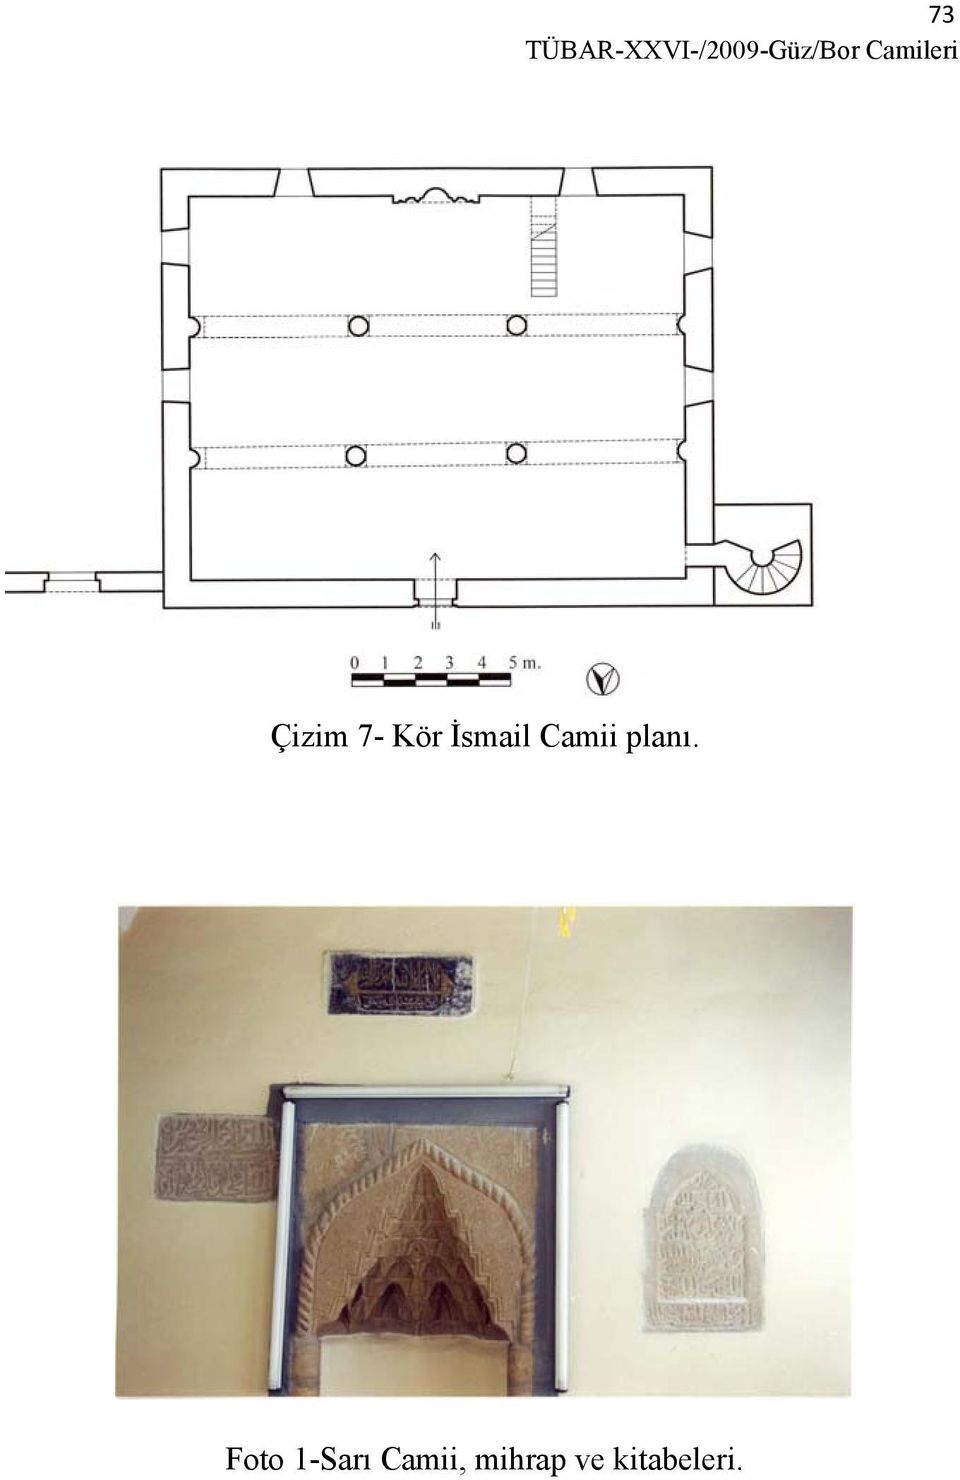 İsmail Camii planı.